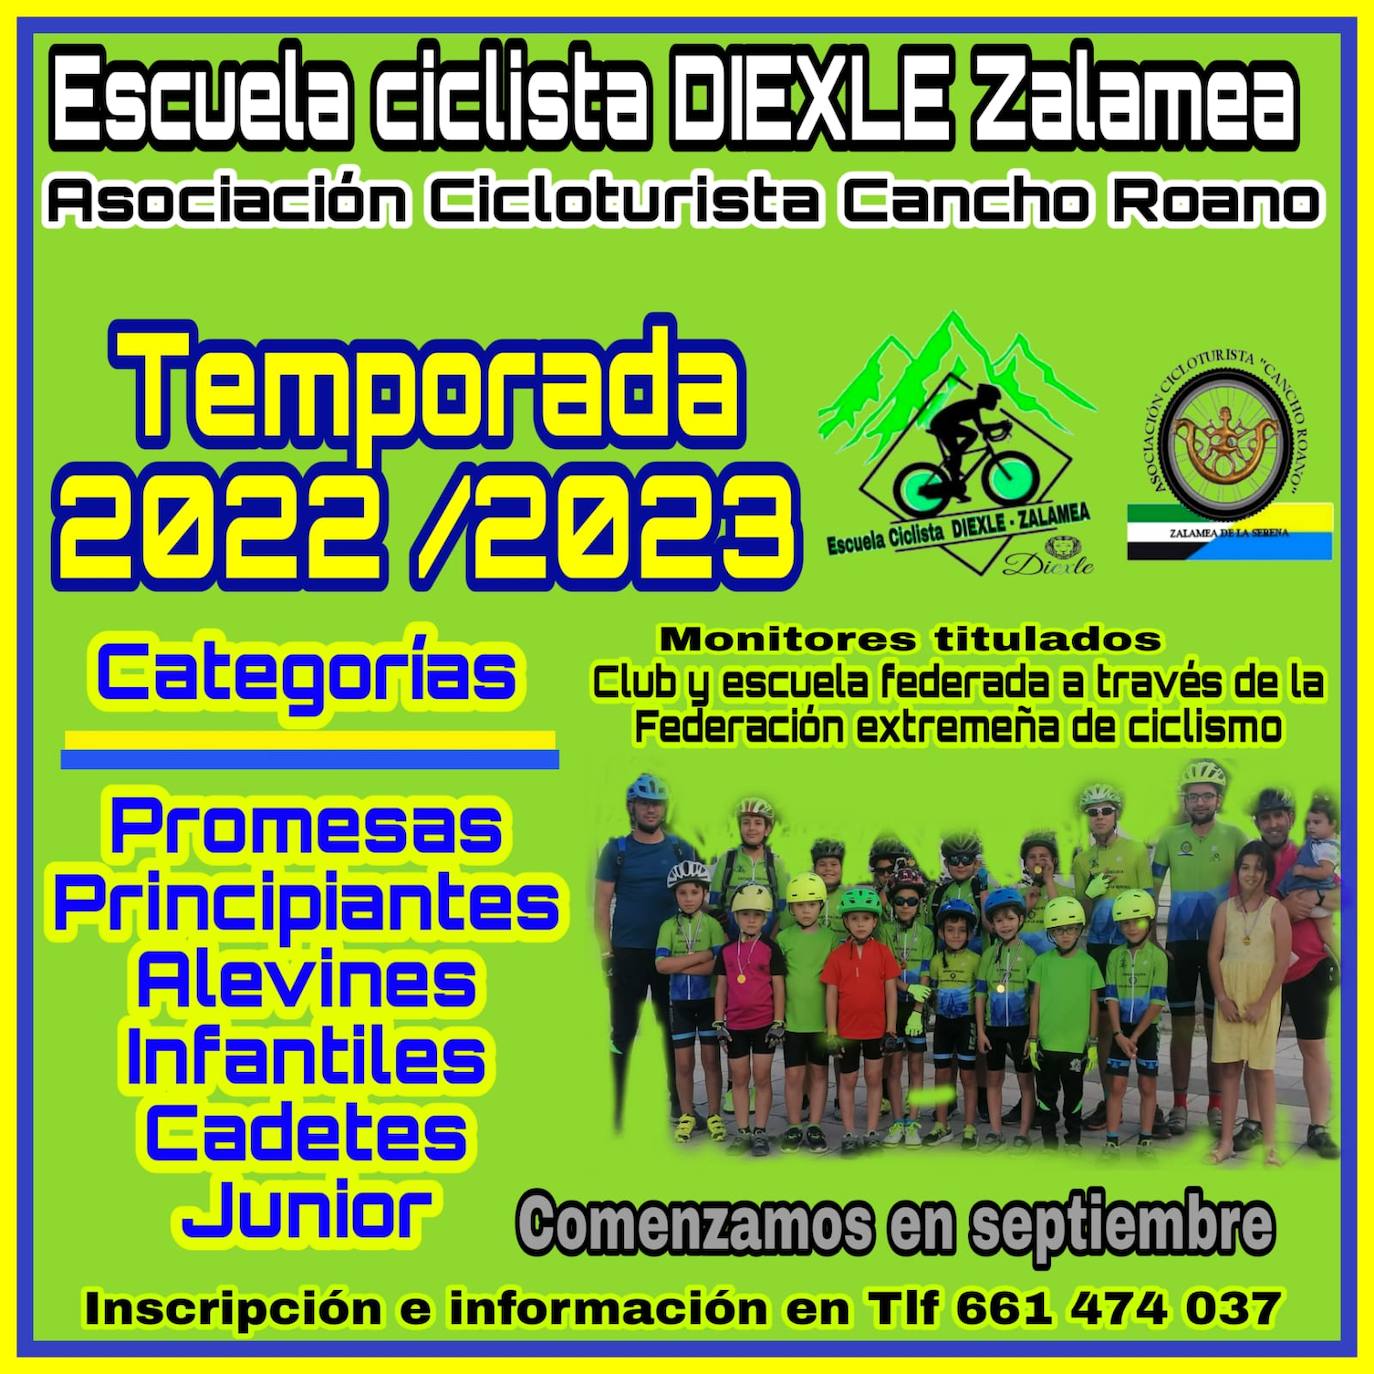 La Escuela Ciclista Diexle Zalamea abre el plazo de inscripción para la temporada 2022/2023